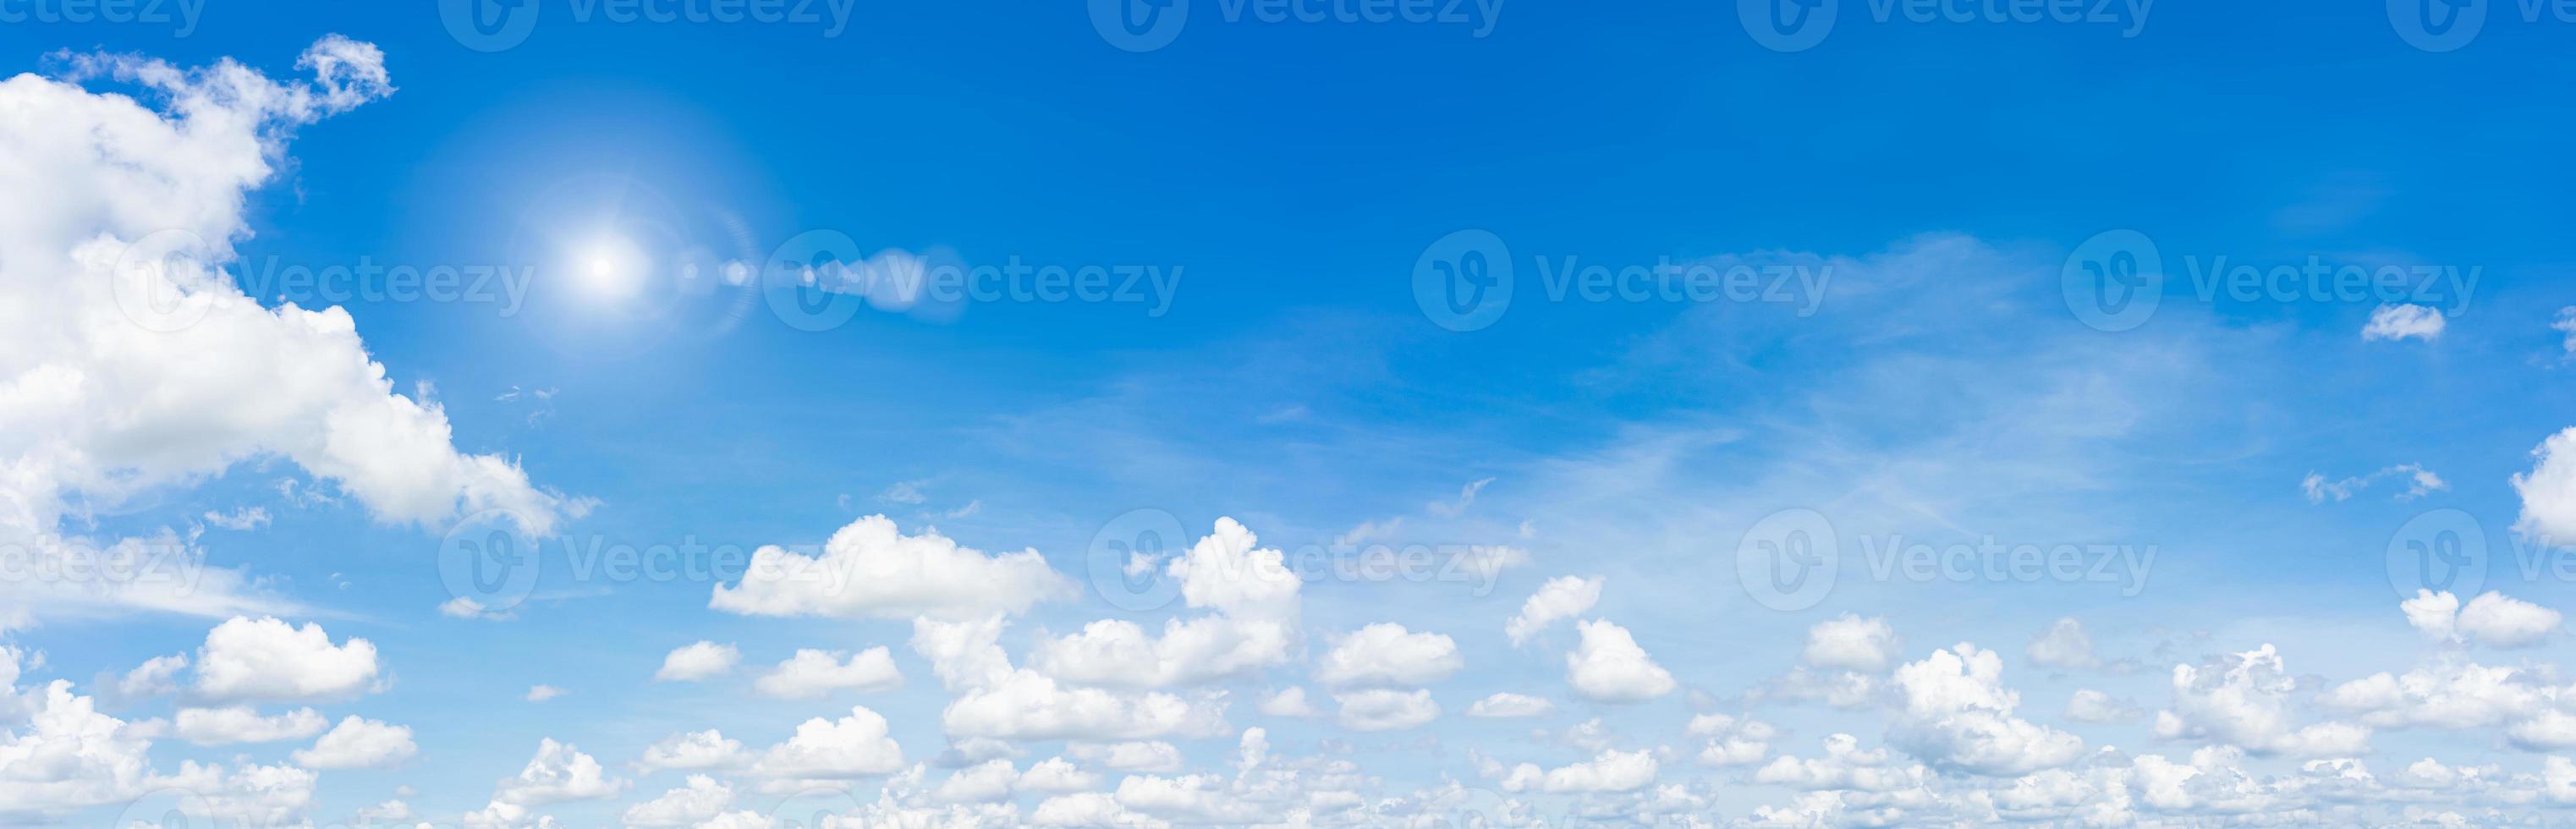 panorama ciel bleu et nuages avec fond naturel soleil et lumière du jour. photo